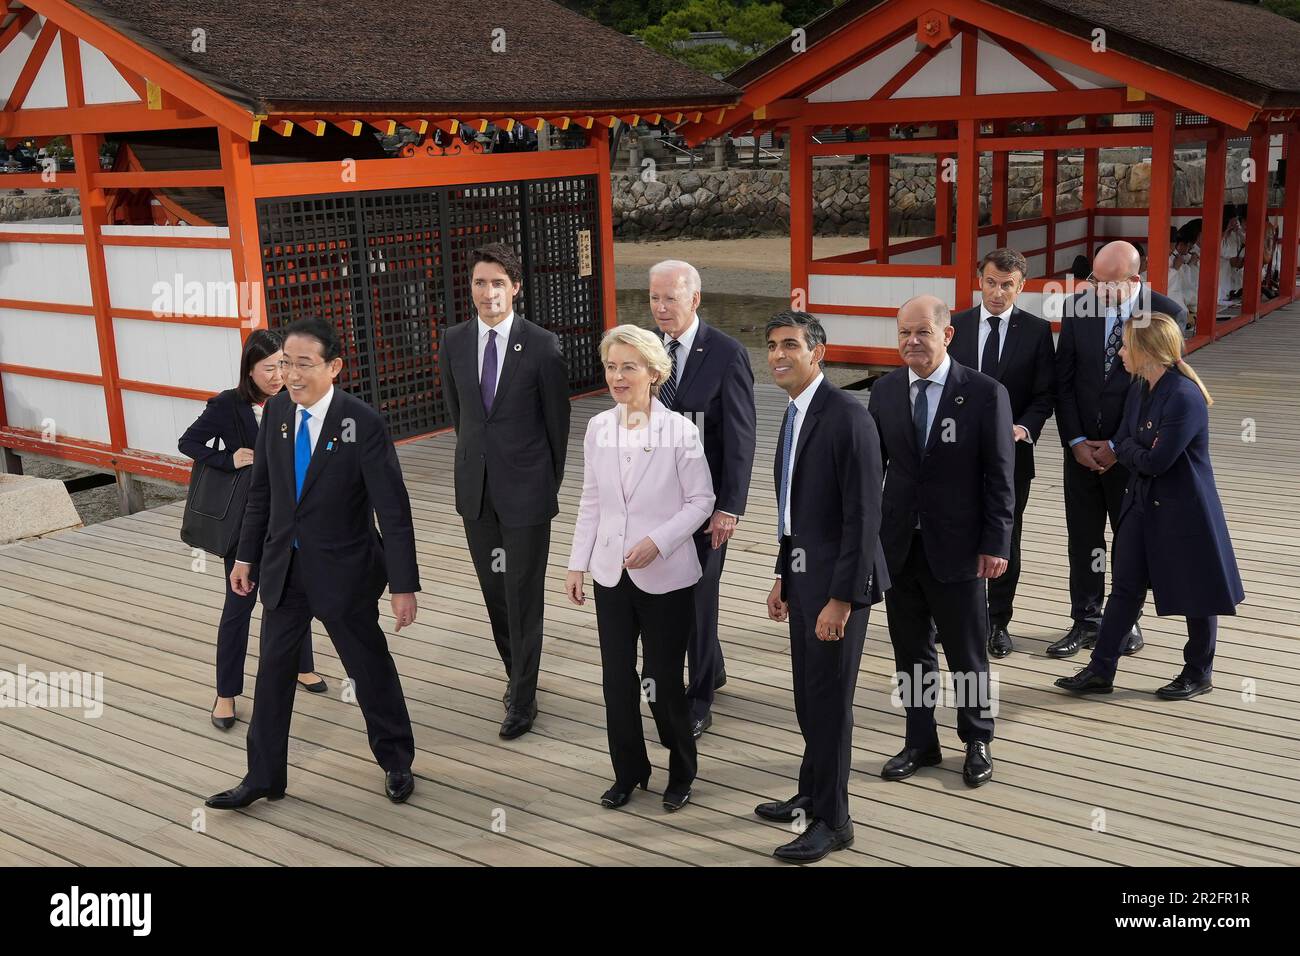 Hatsukaichi, Japon. 19 mai 2023. Groupe de sept dirigeants lors d'une visite du Sanctuaire d'Itsukushima sur l'île de Miyajima pendant le premier jour du Sommet de G7, à 19 mai 2023 à Hatsukaichi, au Japon. Debout de gauche à droite : le premier ministre japonais Fumio Kishida, le premier ministre canadien Justin Trudeau, le président de la Commission européenne Ursula von der Leyen, États-Unis Le président Joe Biden, le Premier ministre britannique Rishi Sunak, la chancelière allemande OLAF Schotz, le président français Emmanuel Macron, le président du Conseil européen Charles Michel, le président français Emmanuel Macron et le premier ministre italien Giorgia Meloni. Crédit: Piscine Pho Banque D'Images